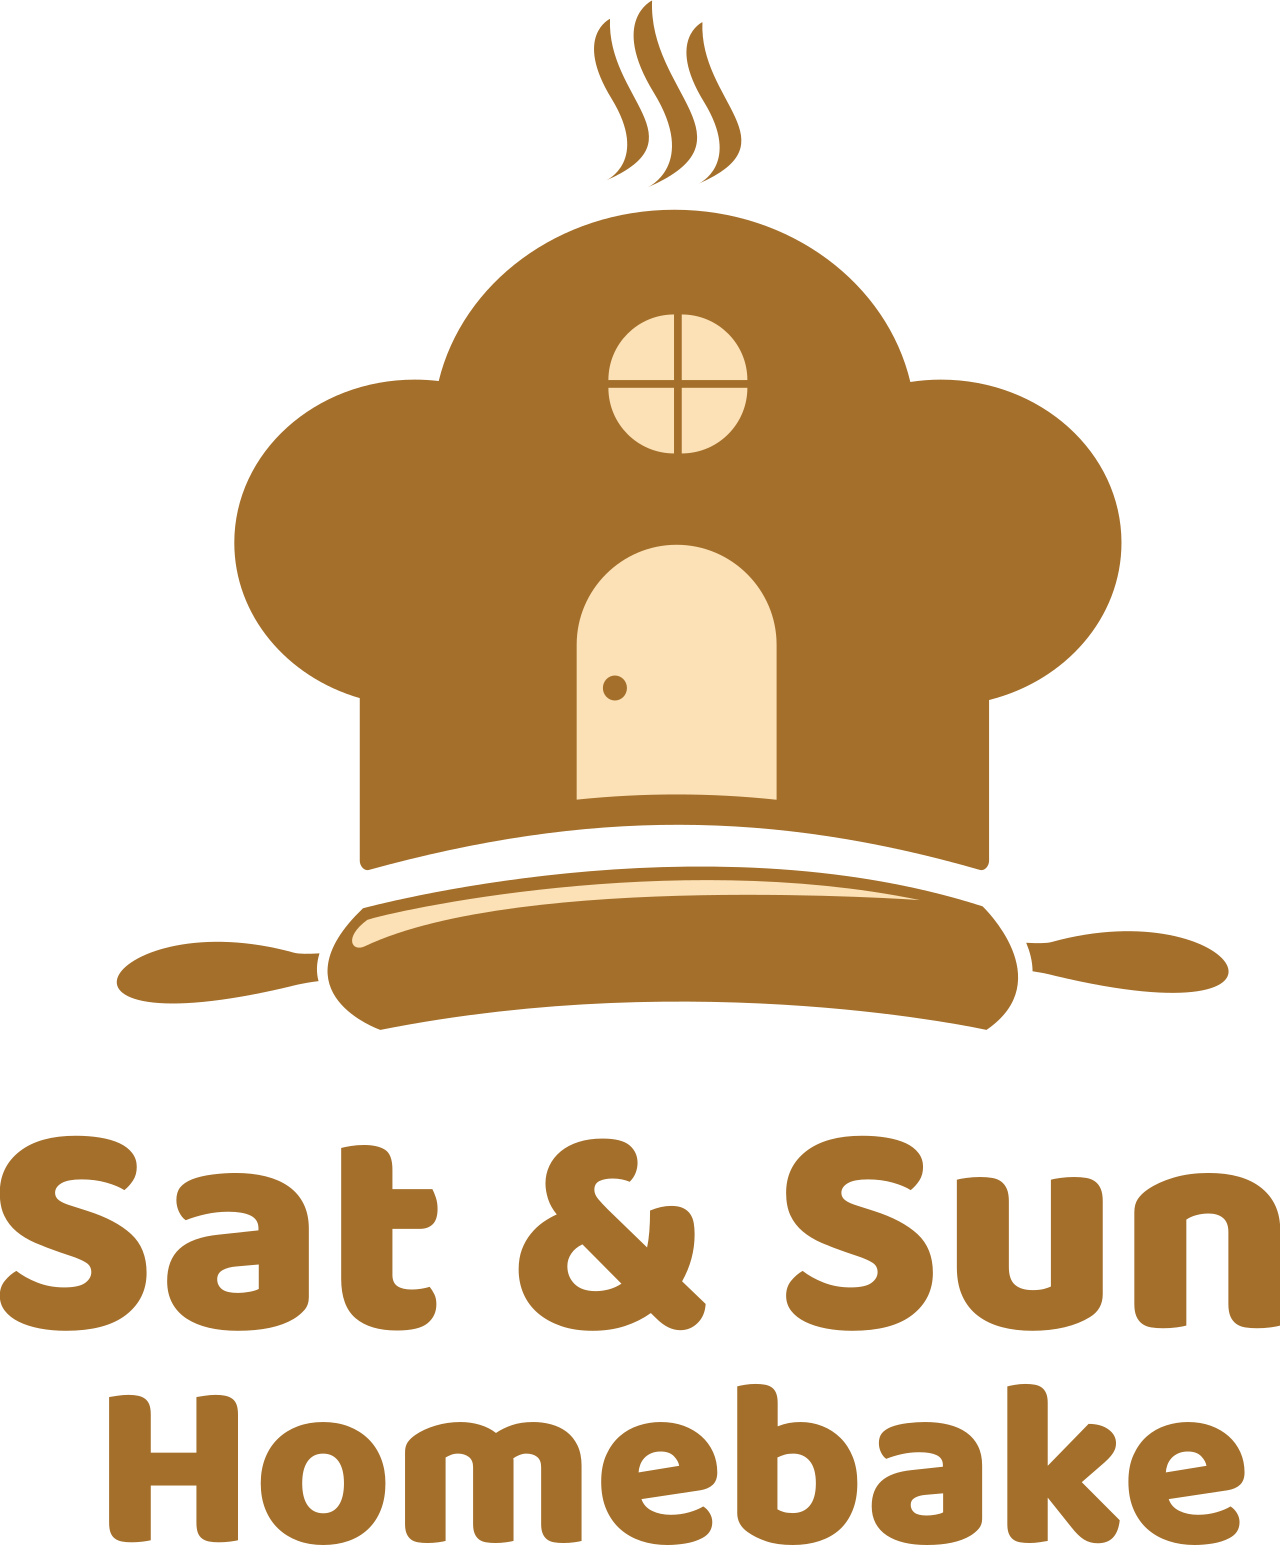 Sat & Sun 's web page